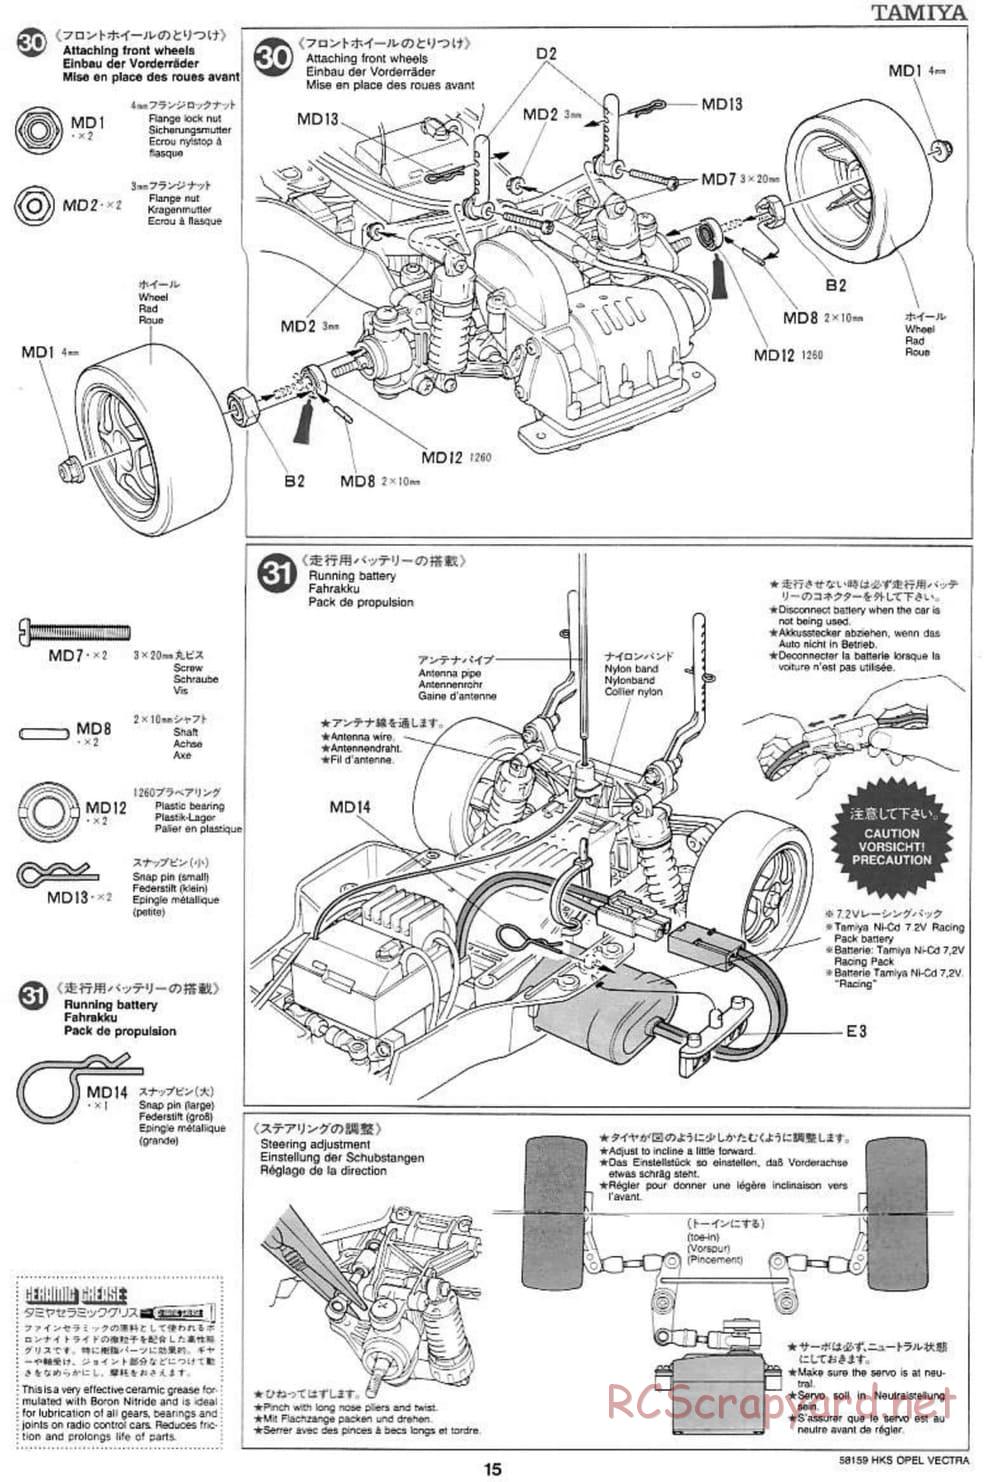 Tamiya - HKS Opel Vectra JTCC - FF-01 Chassis - Manual - Page 15